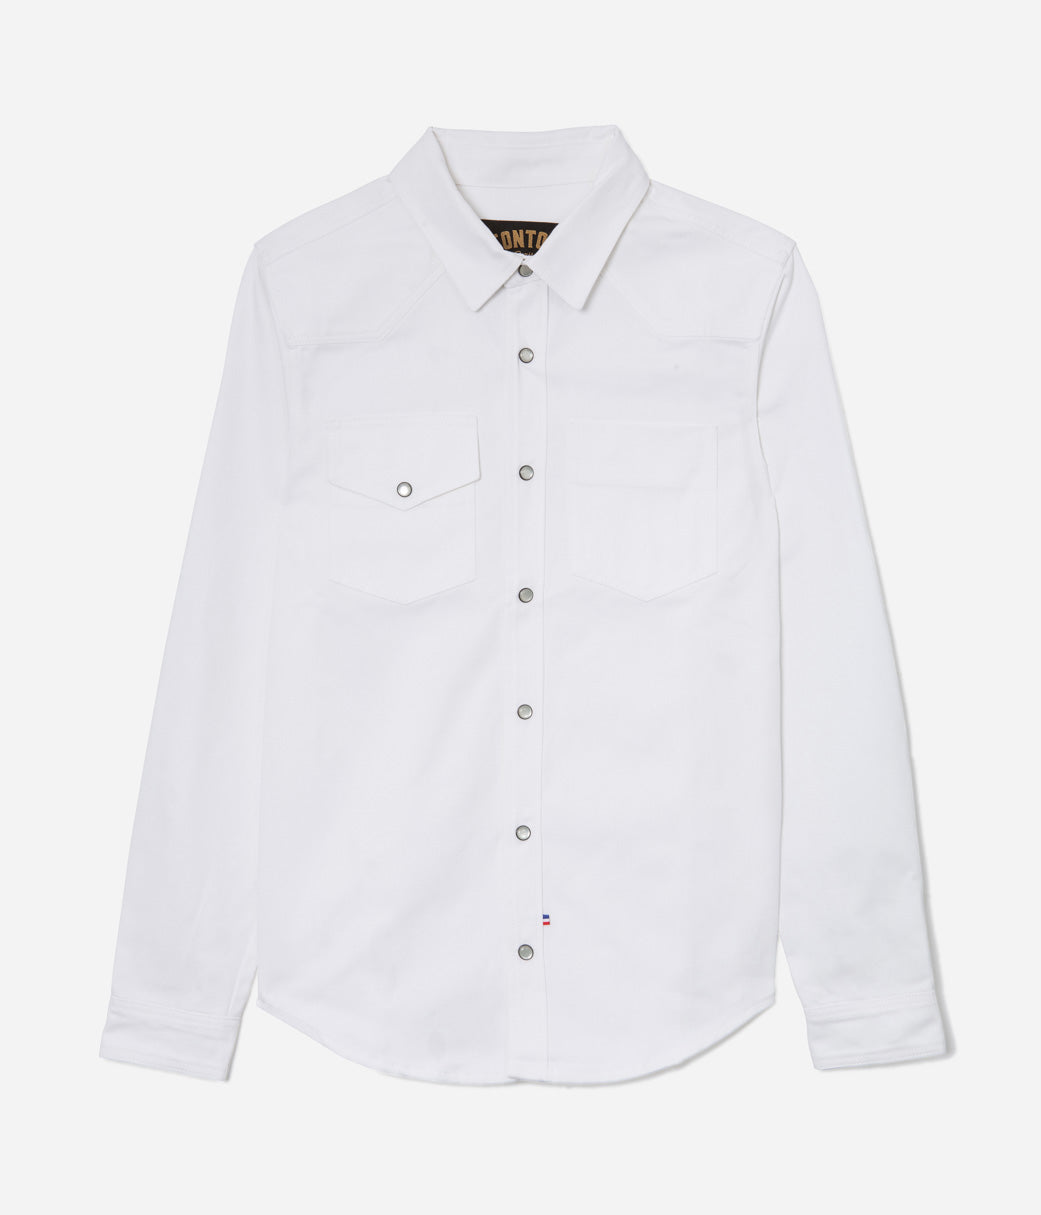 Tonton et Fils - La chemise «Jimmy» twill blanc - Fabriquée en France - Vue générale